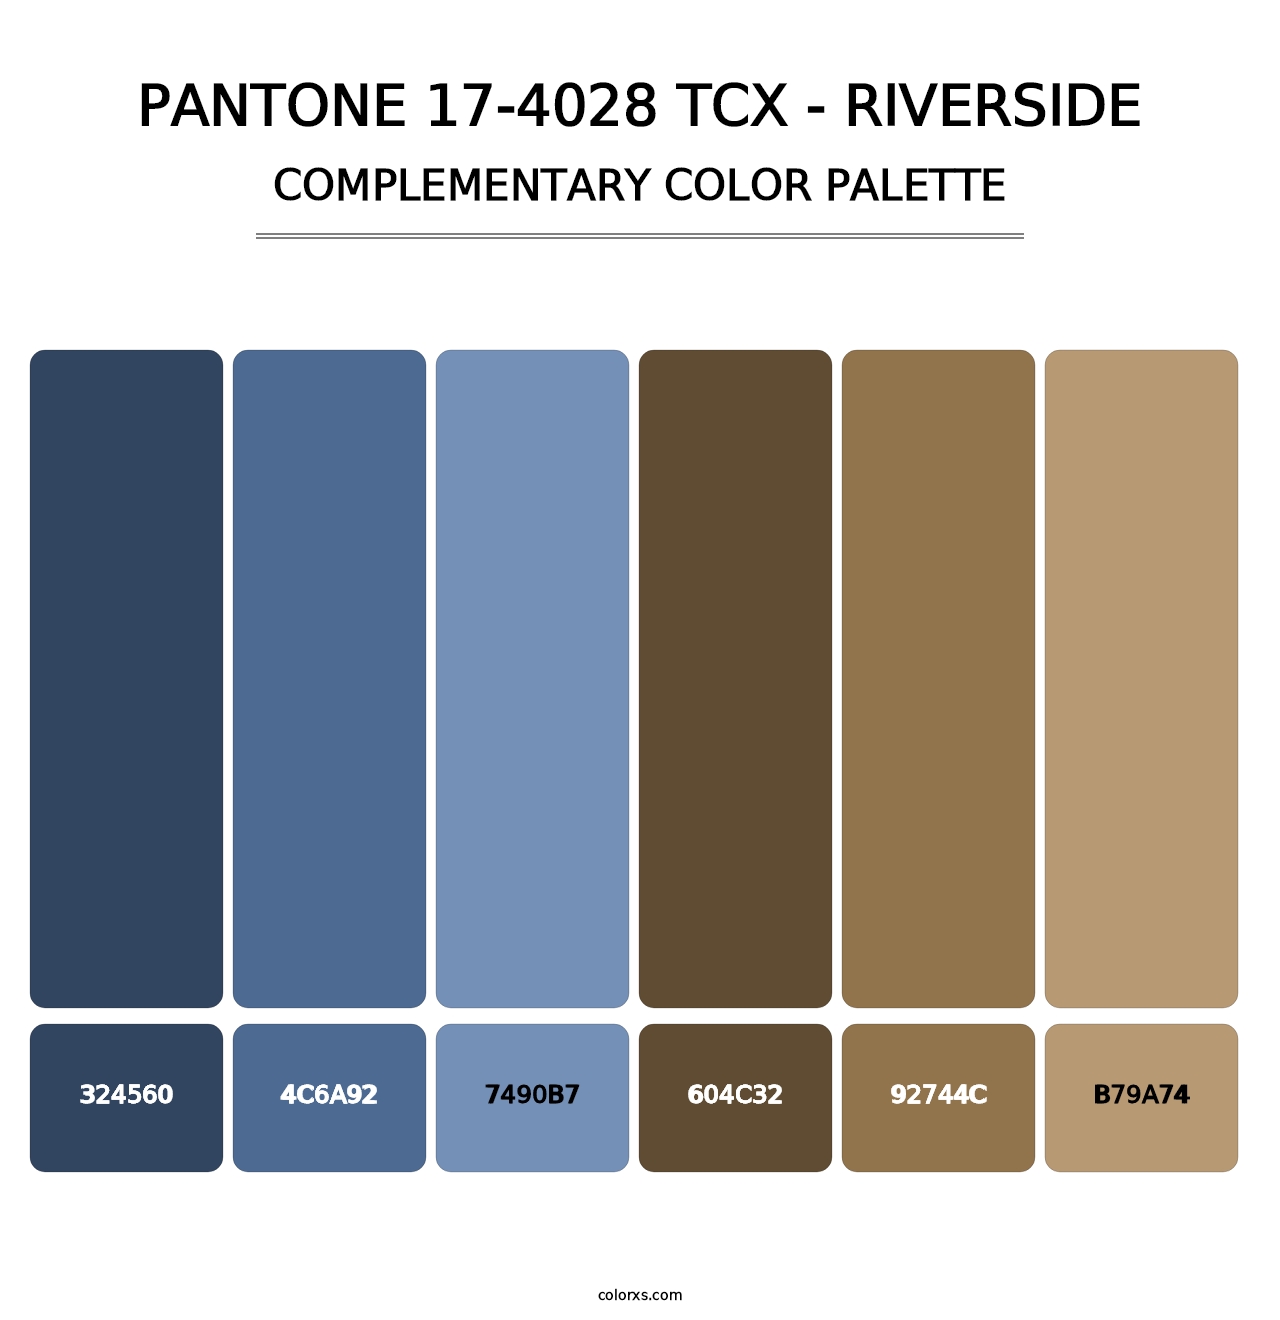 PANTONE 17-4028 TCX - Riverside - Complementary Color Palette